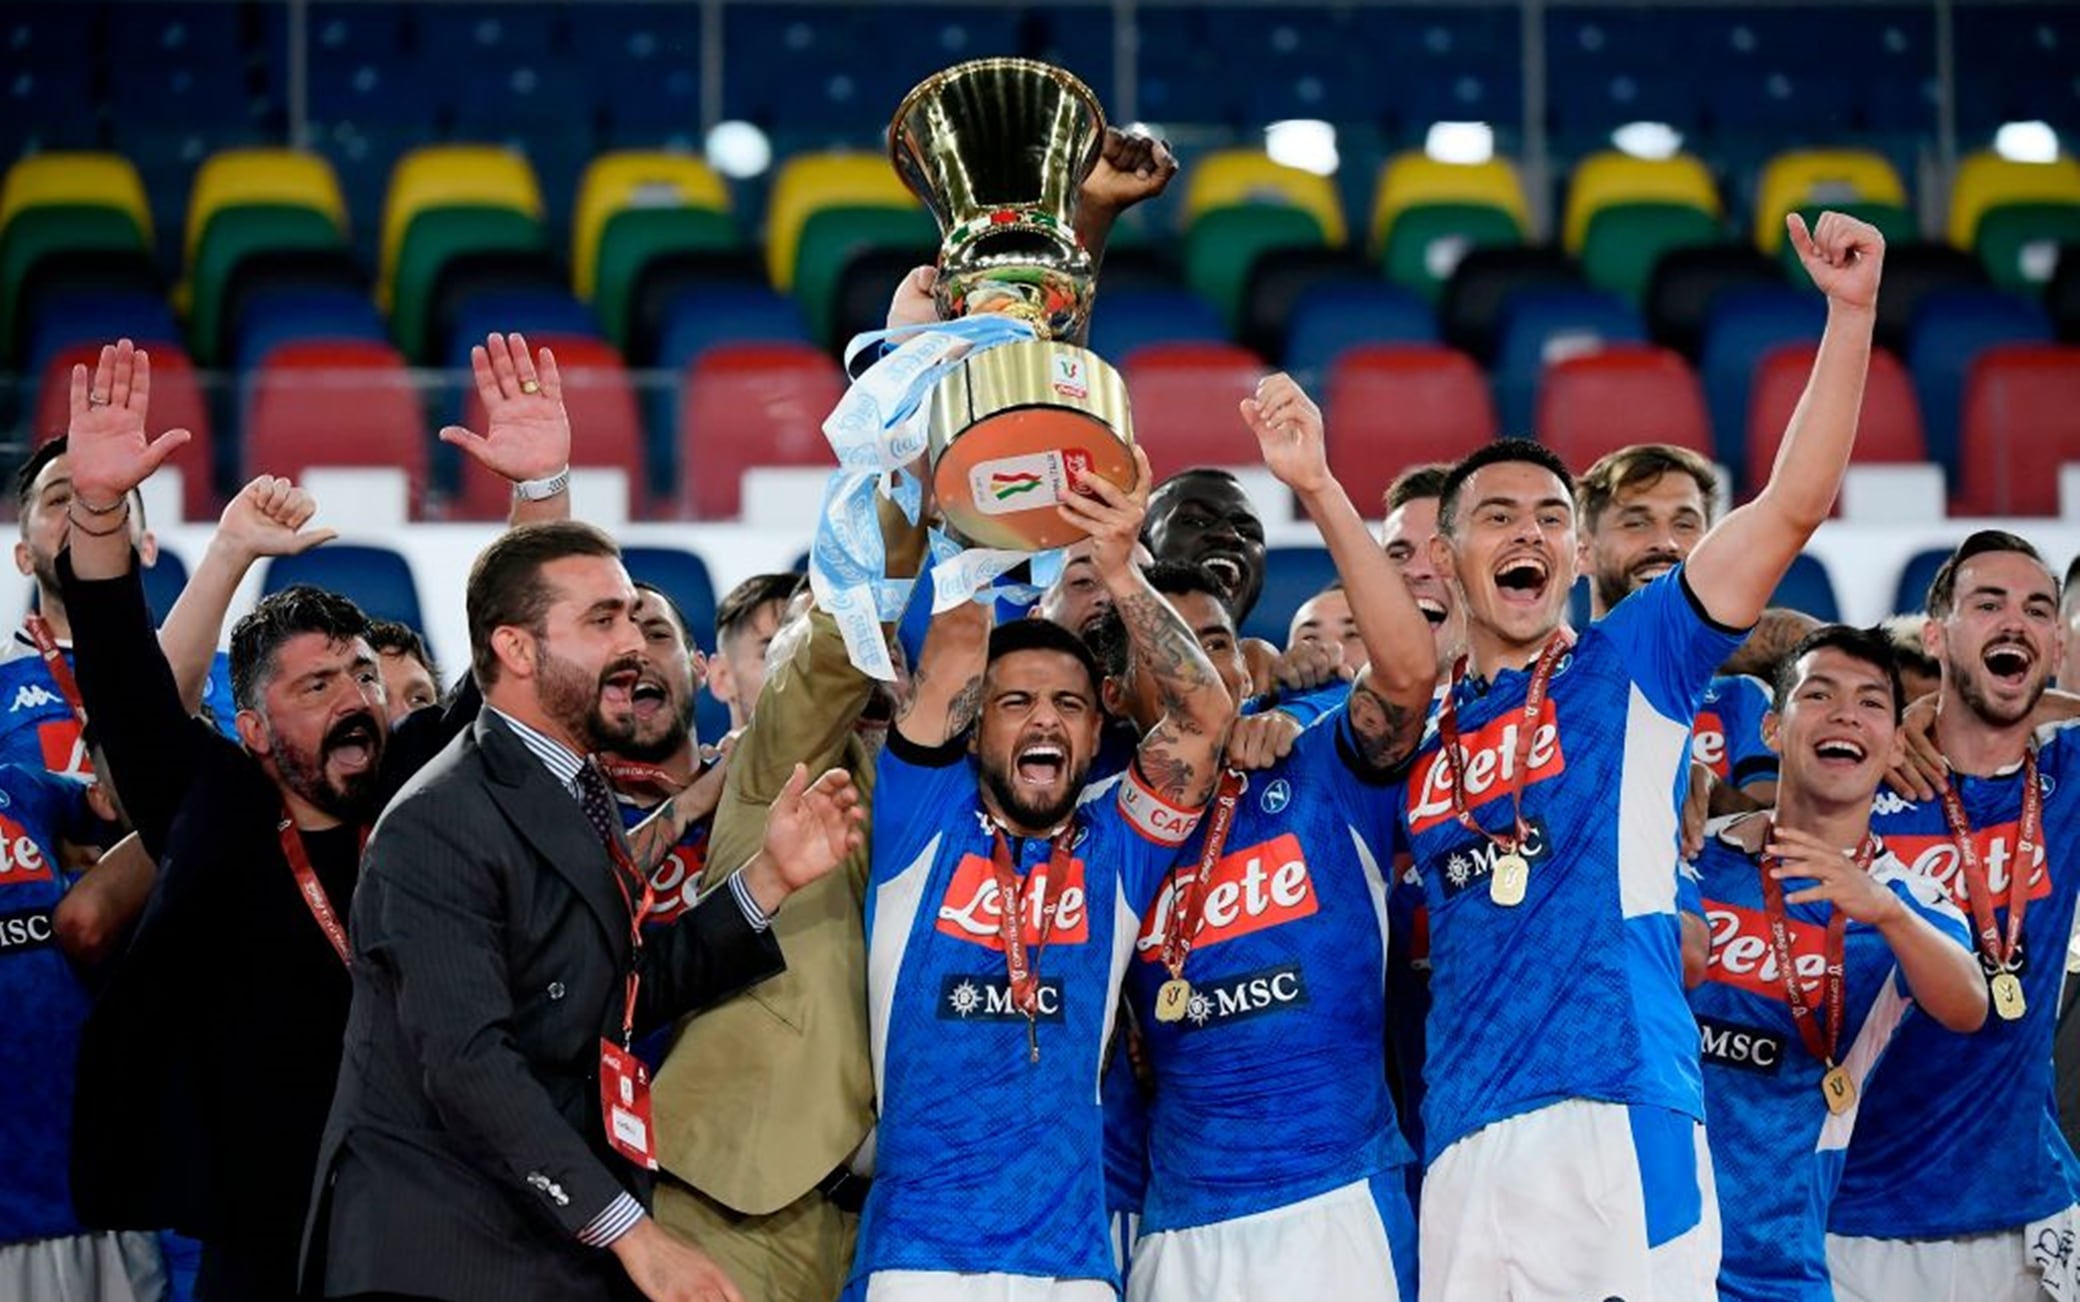 Finale Coppa Italia